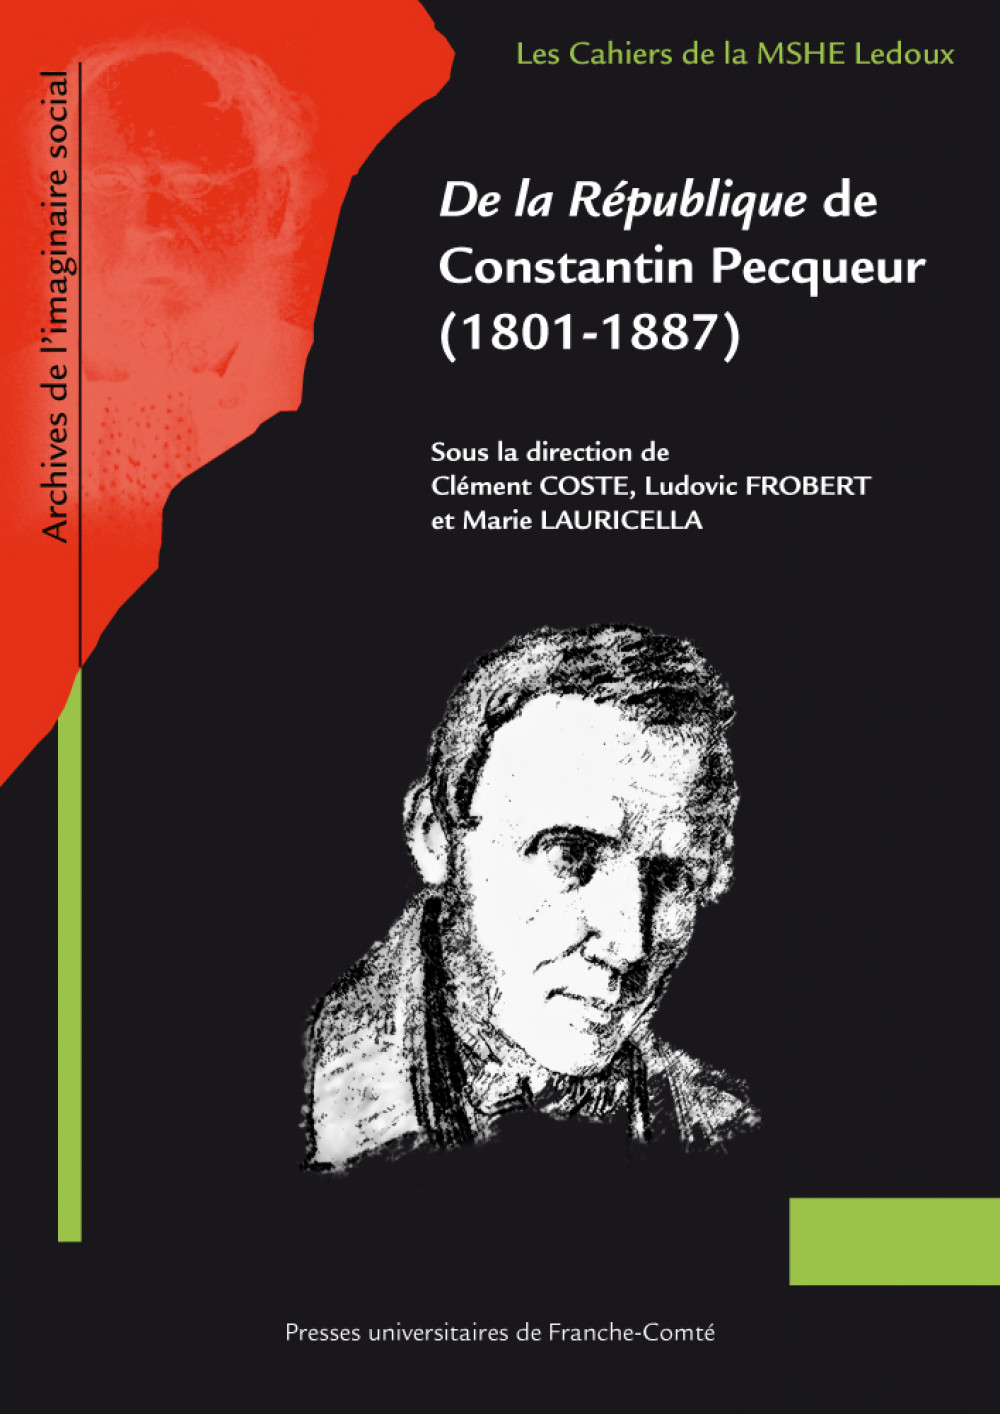 De la République de Constantin Pecqueur (1801-1887)